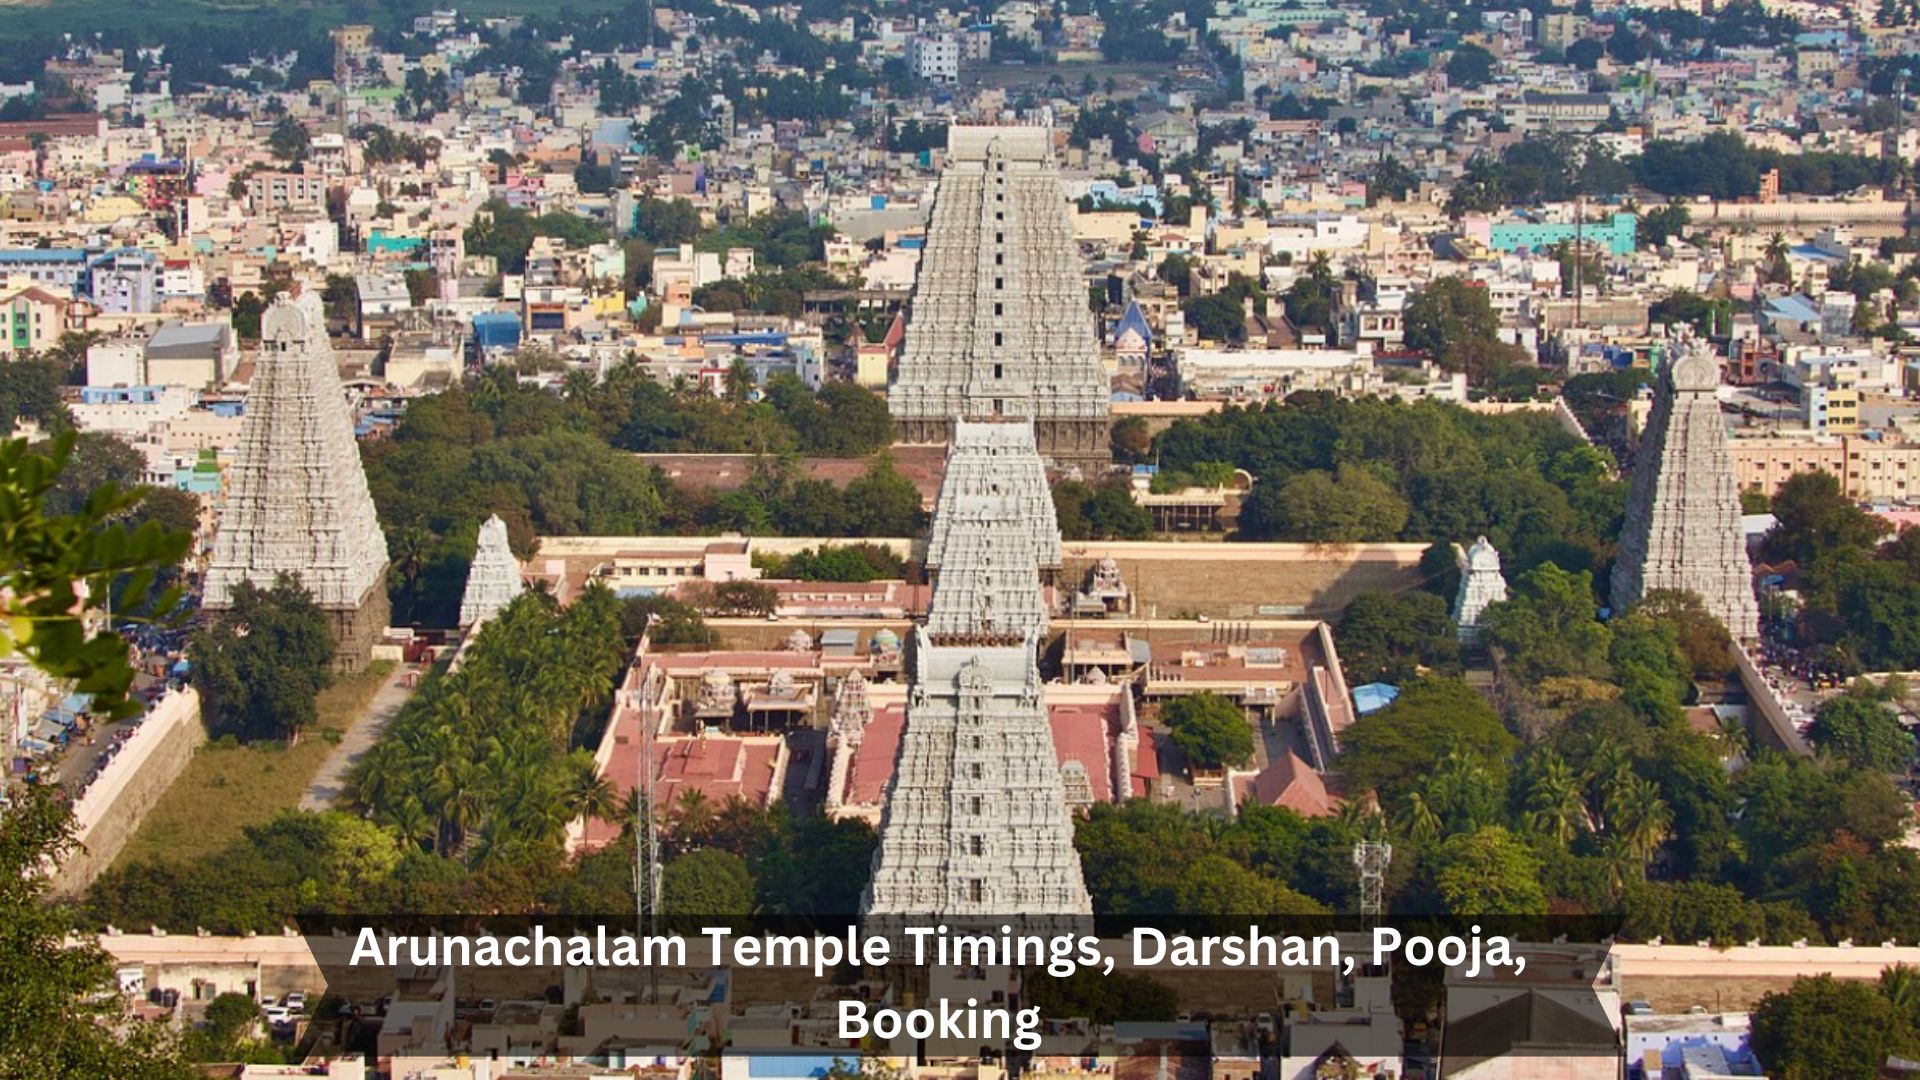 Arunachalam-Temple-Timings-Darshan-Pooja-Booking